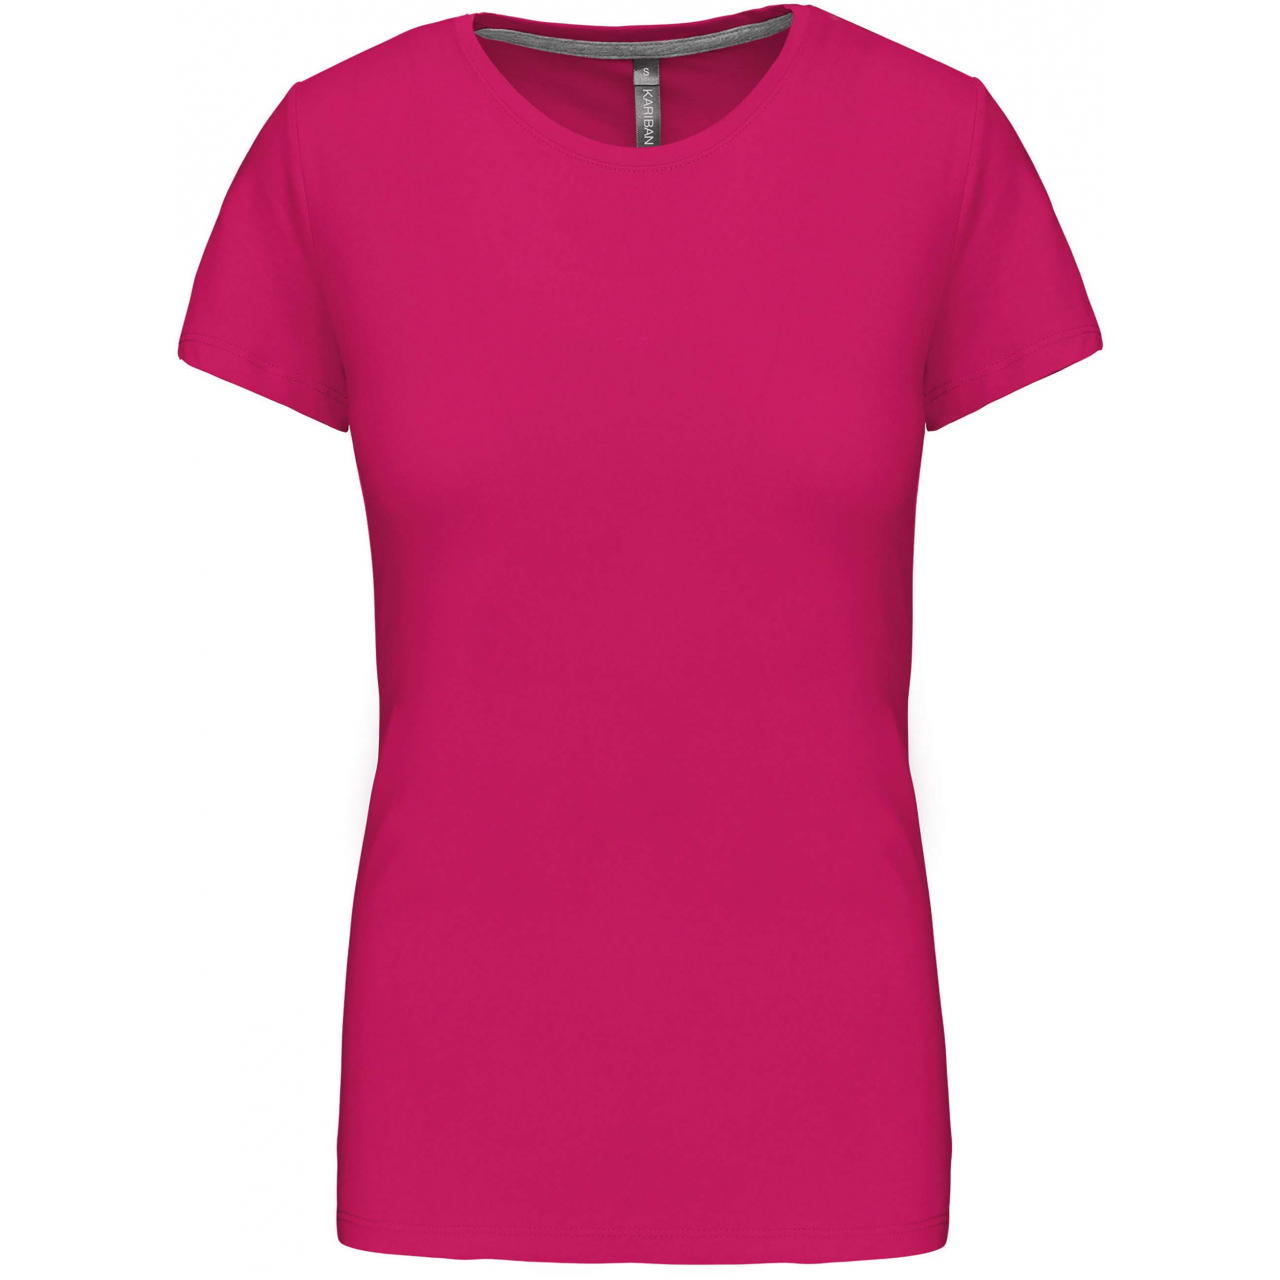 Dámské tričko Kariban s krátkým rukávem - růžové, XL